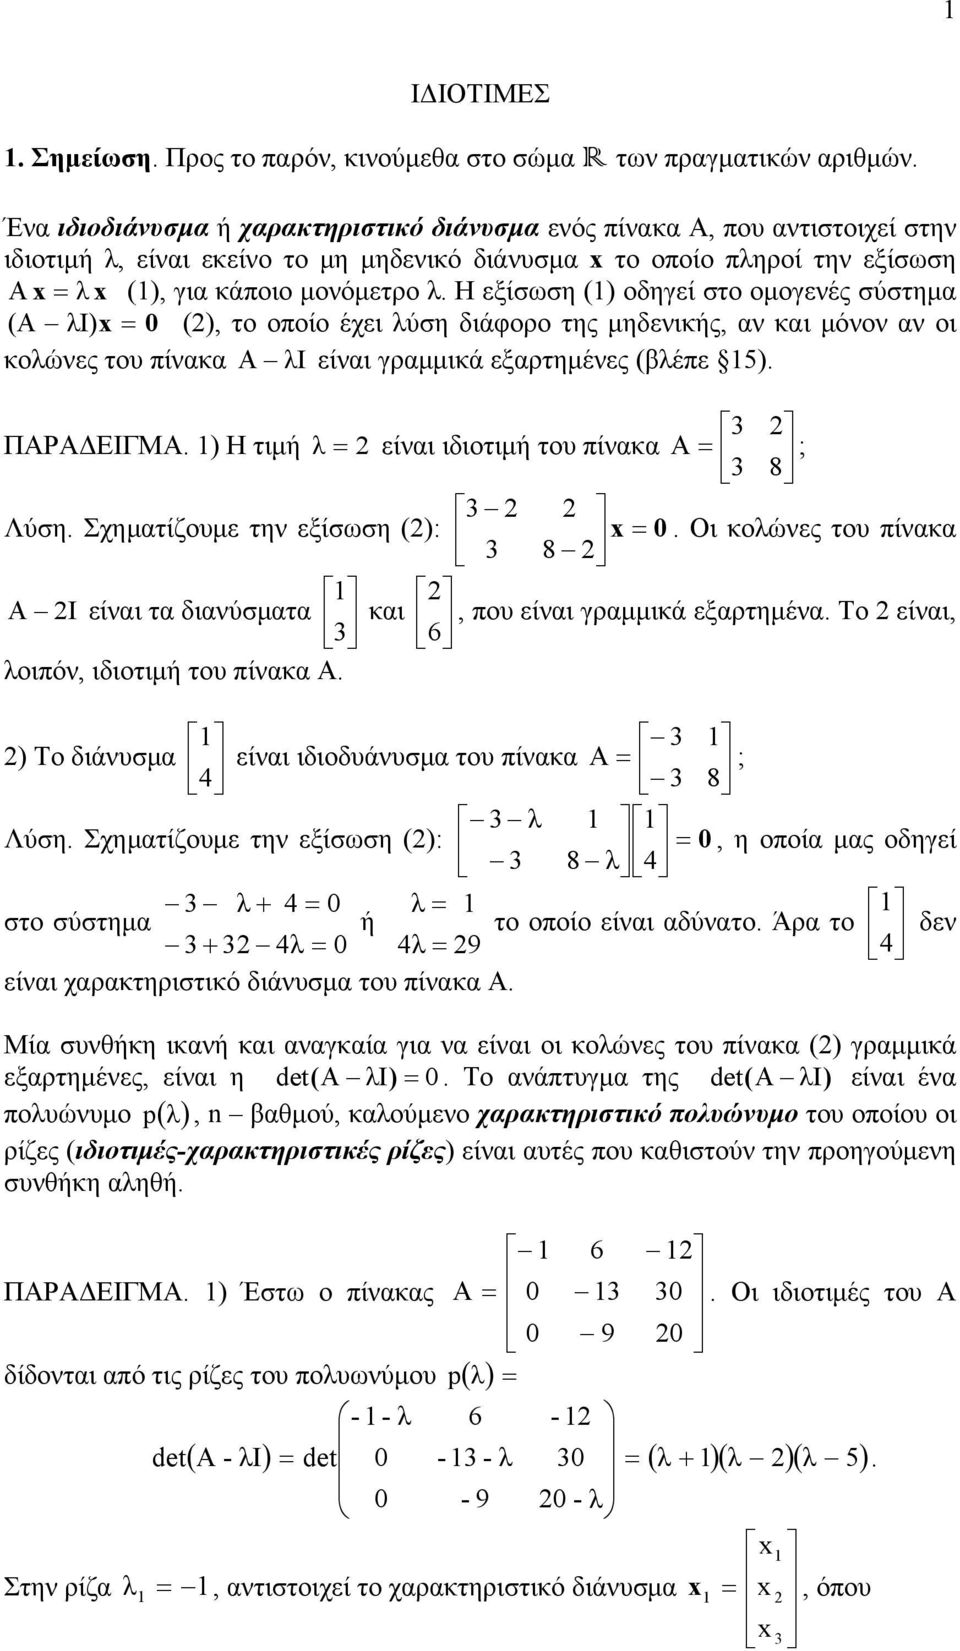 (βέπε 5) ΠΑΡΑΔΕΙΓΜΑ ) Η τιμή είνι ιδιοτιμή του πίνκ A ; 8 Λύση Σχημτίζουμε την εξίσωση (): Οι κοώνες του πίνκ 8 A I είνι τ δινύσμτ κι, που είνι γρμμικά εξρτημέν Το είνι, 6 οιπόν, ιδιοτιμή του πίνκ Α